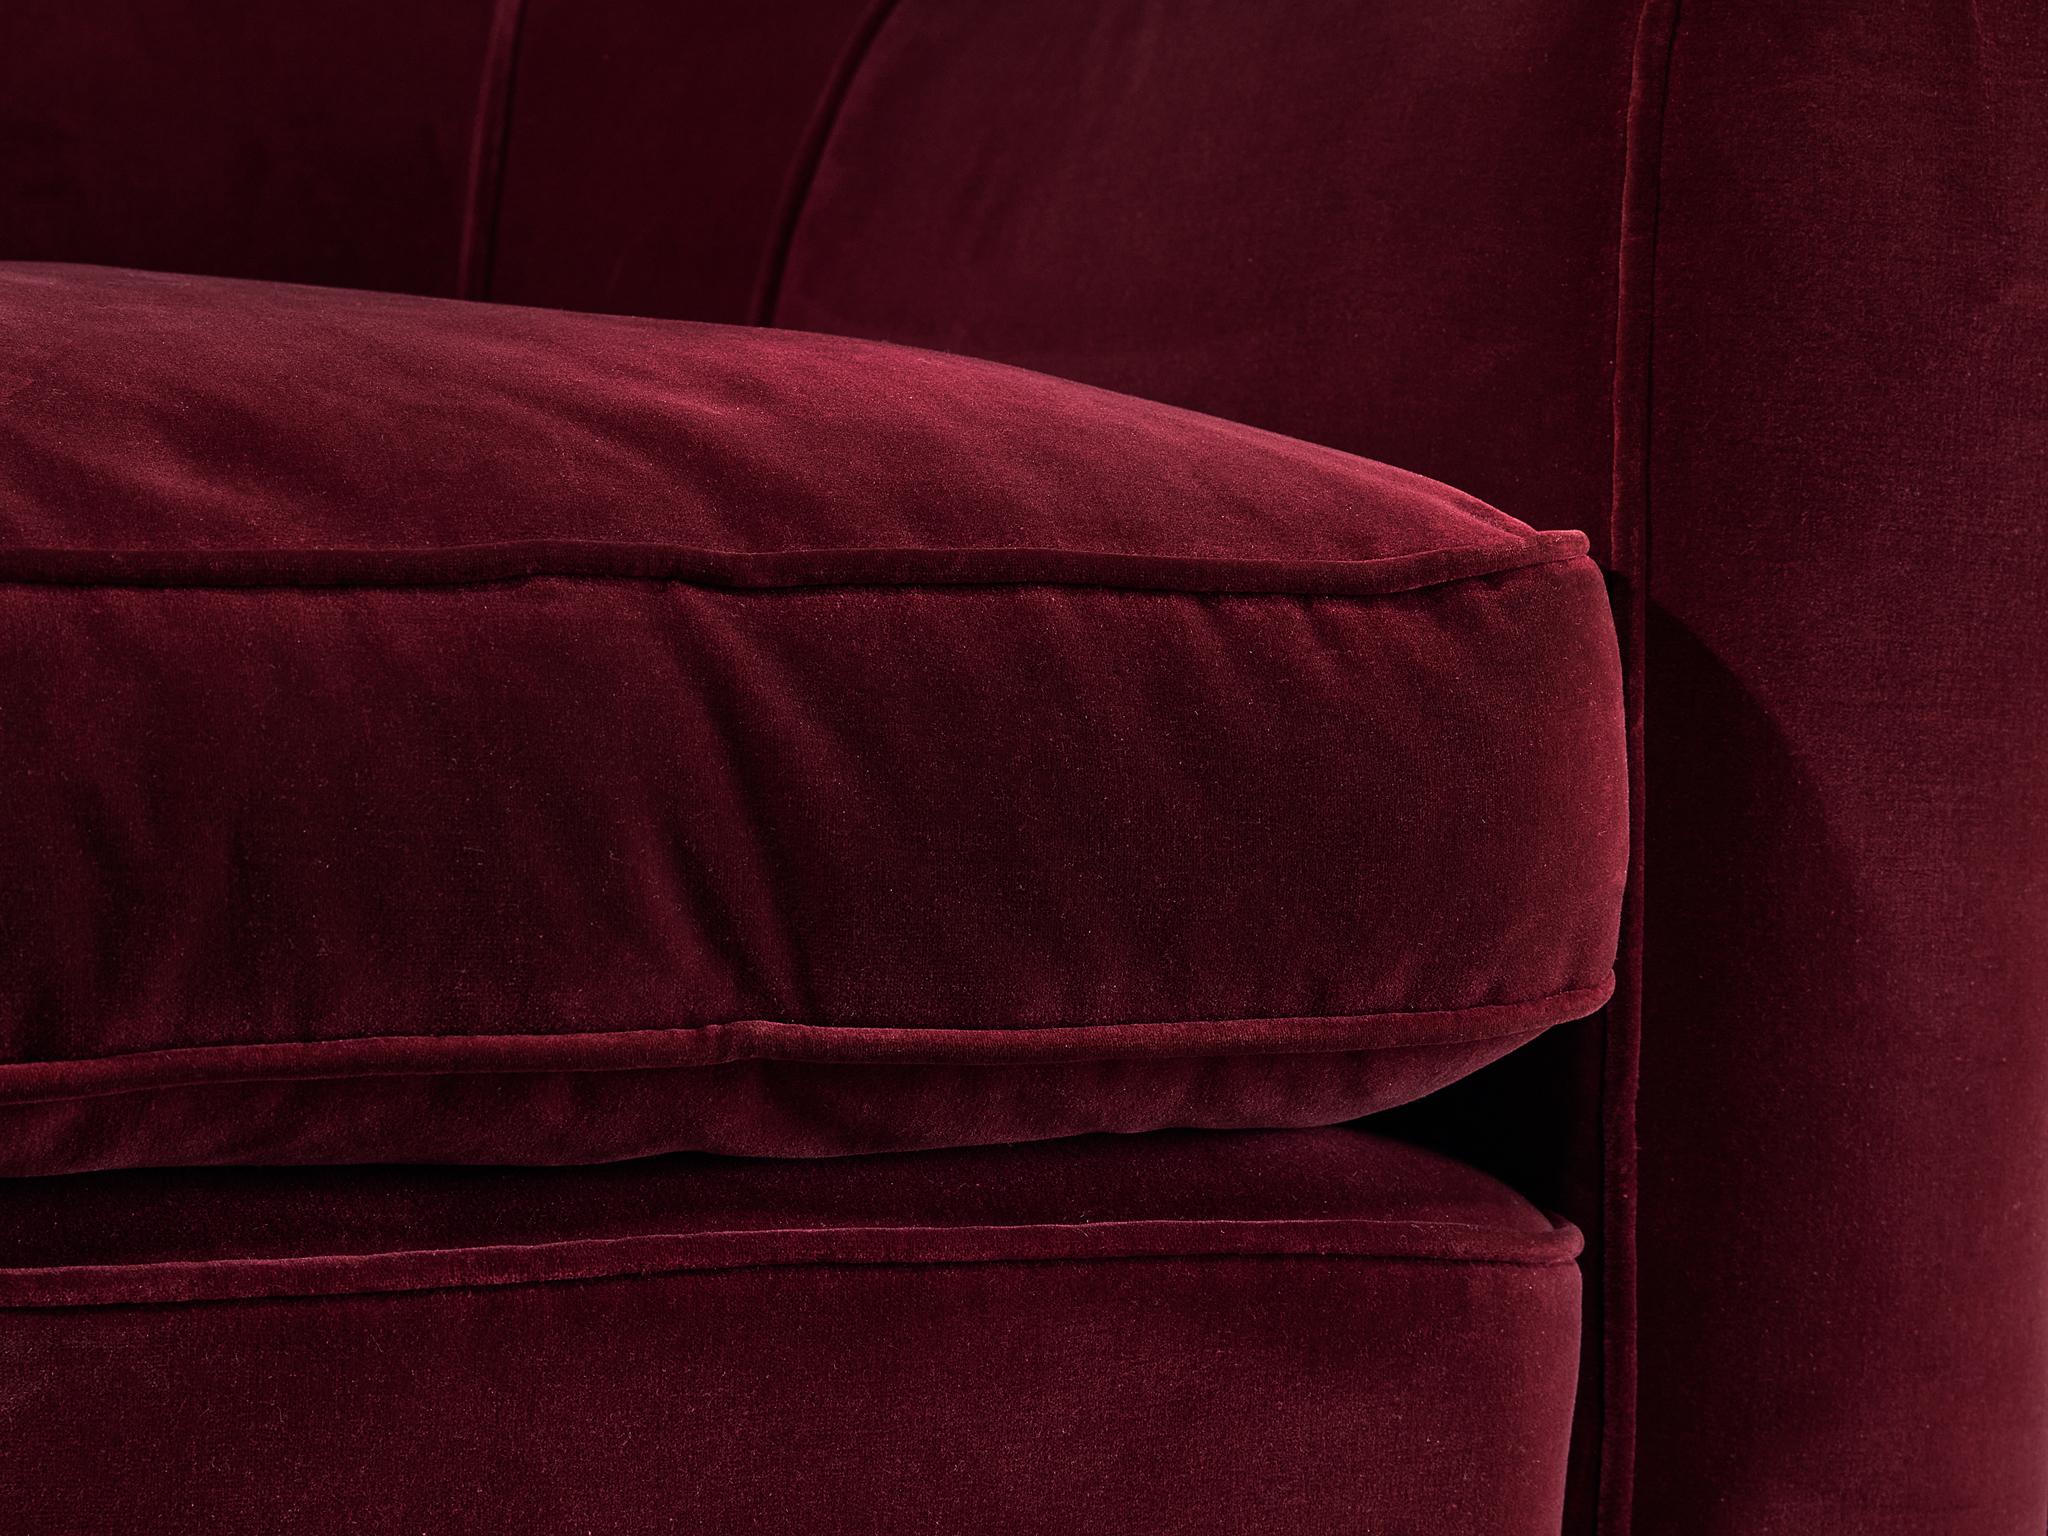 Italian Art Deco Pair of Lounge Chairs in Burgundy Velvet For Sale 4